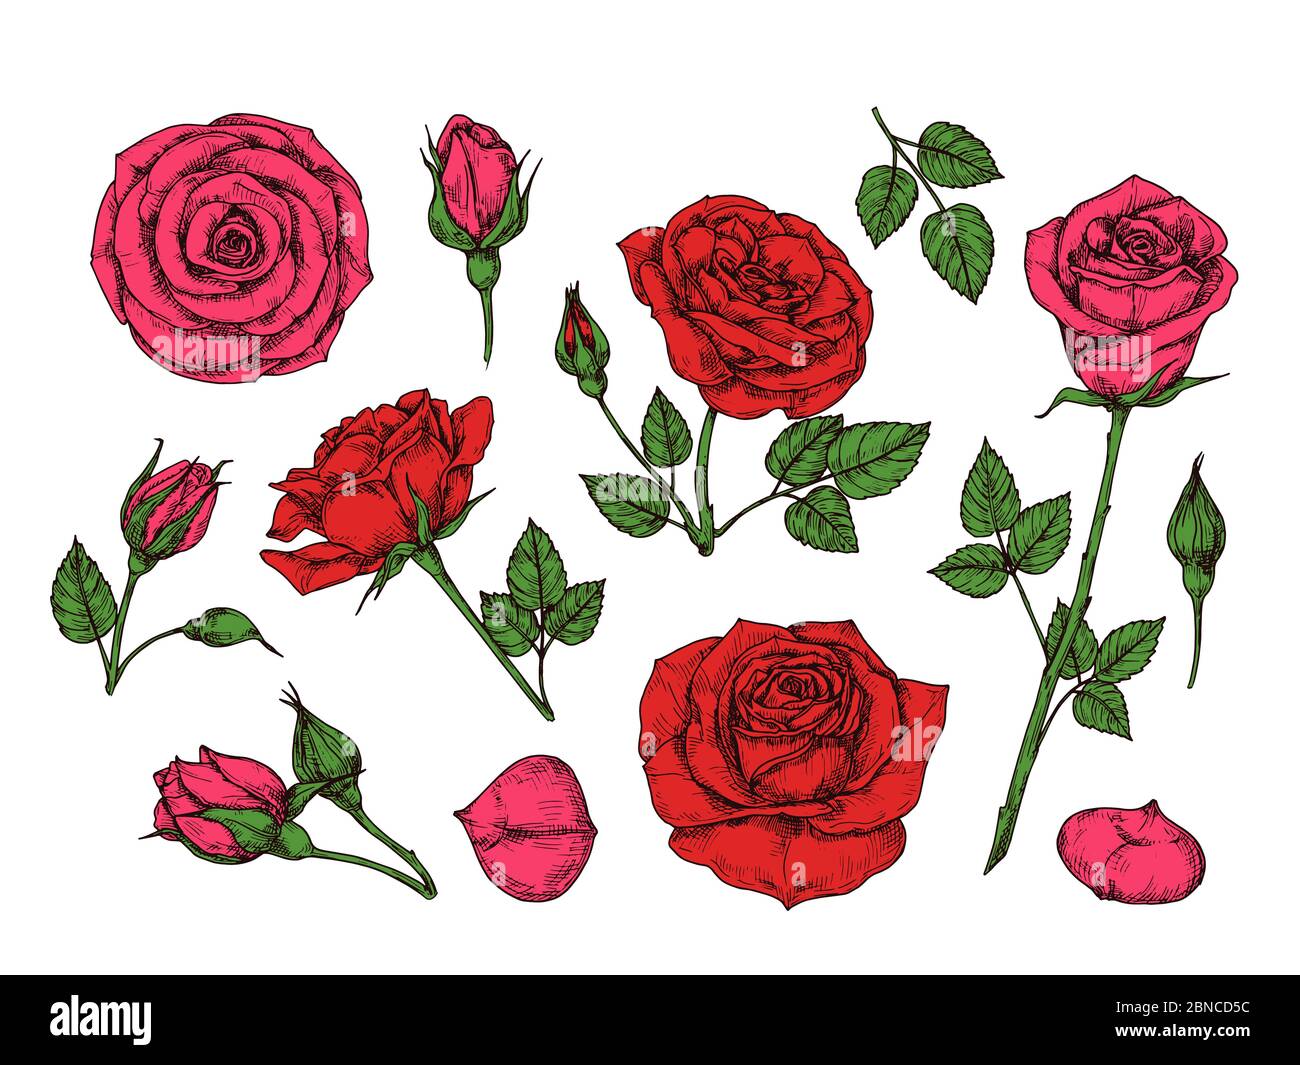 Rote Rose. Handgezeichnete Rosen Gartenblumen mit grünen Blättern, Knospen und Dornen. Cartoon Vektor isolierte Sammlung. Rote Rose Blütenblatt, Blumenblume romantische Illustration Stock Vektor